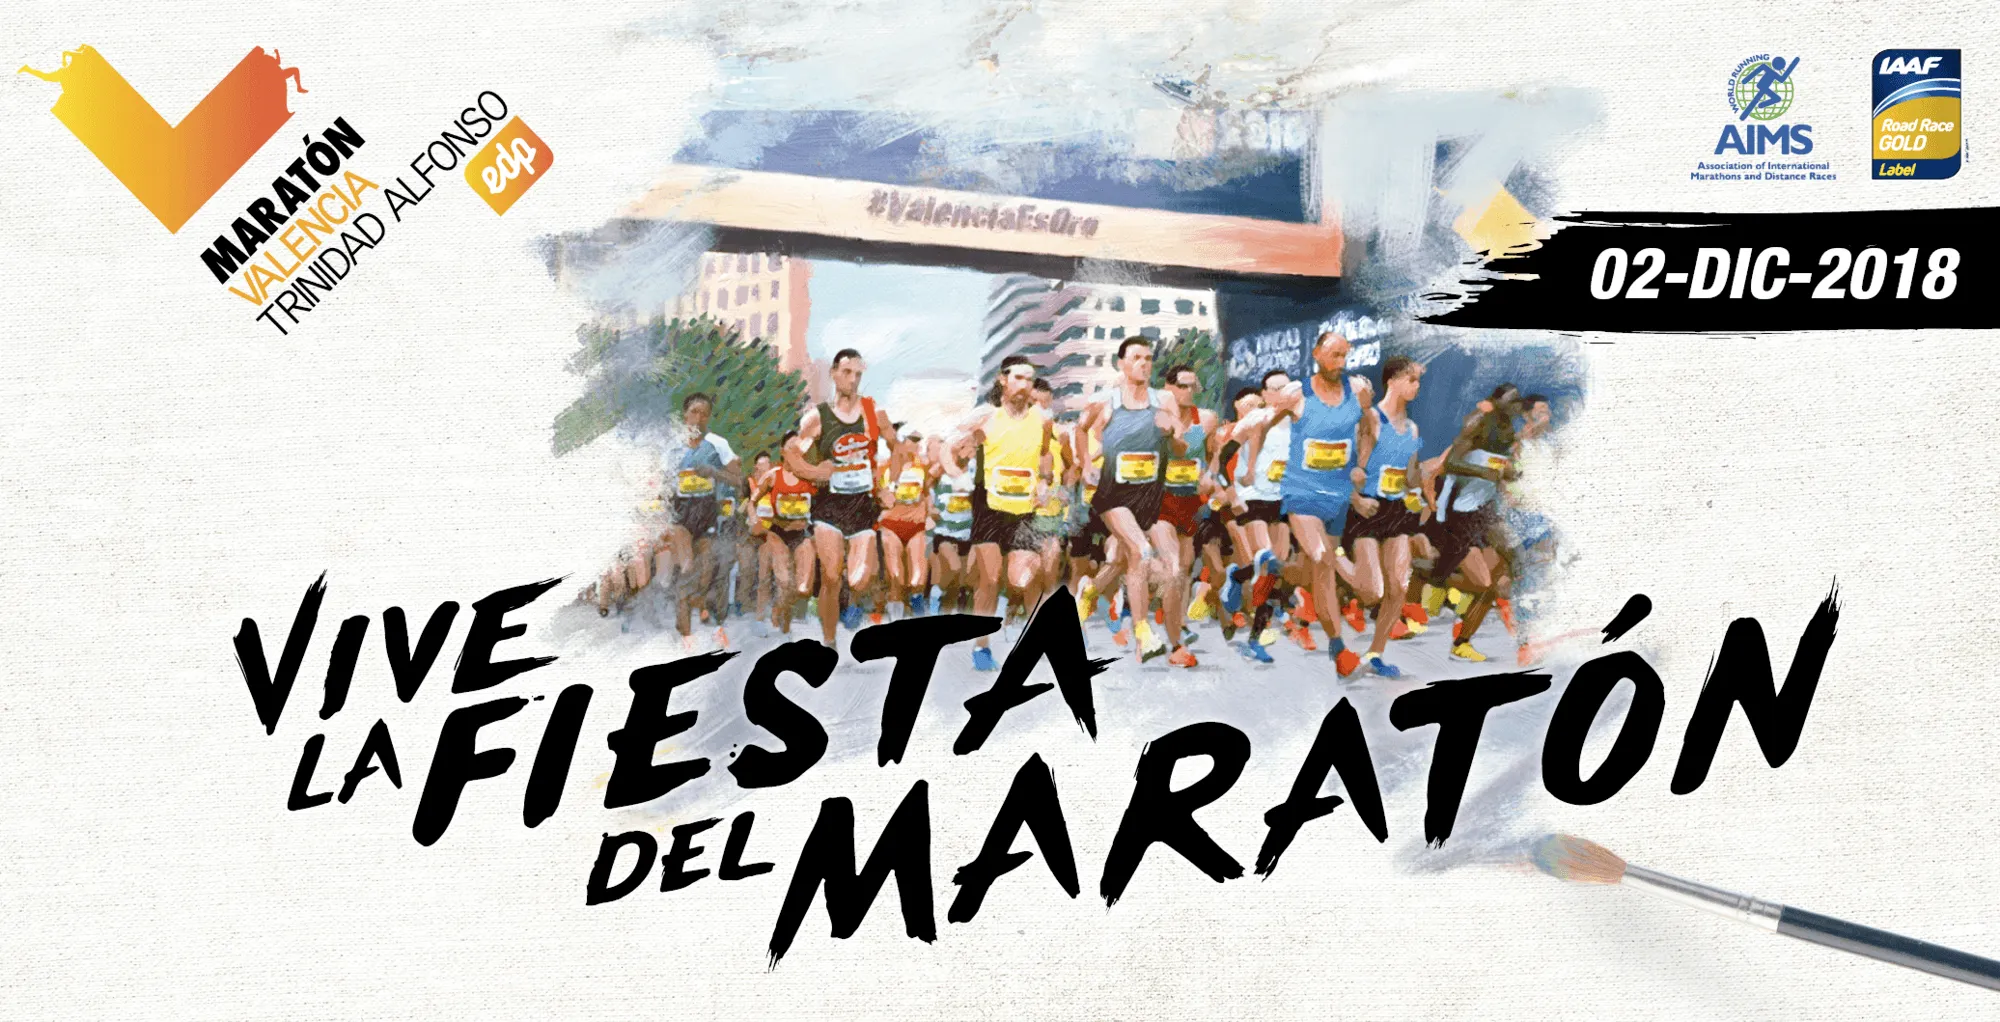 Campaña publicitaria del Maratón de Valencia, 2018